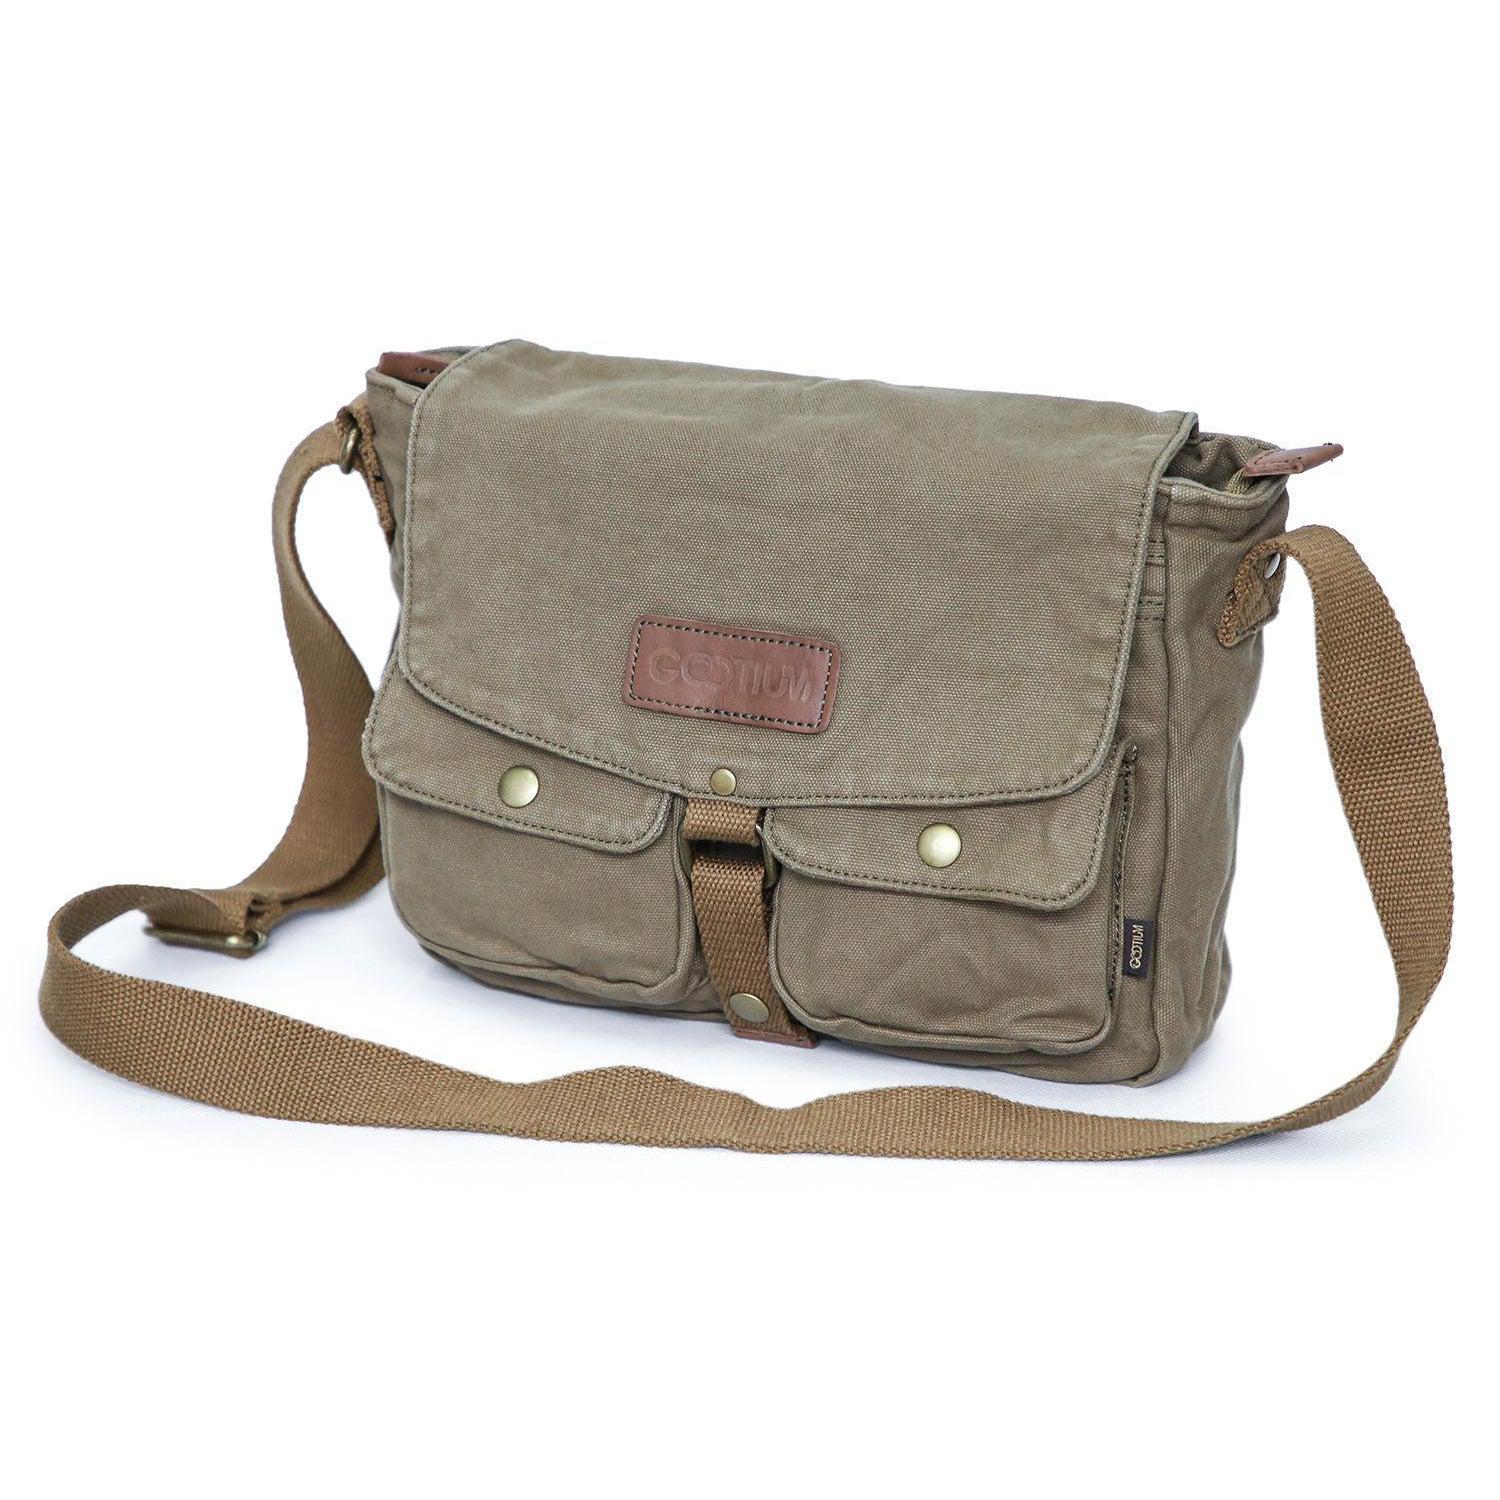 WildHorn� Leather 11.5 inch Messenger Bag for Men I Multipurpose Bag I  Office Bag I Travel Bag with Adjustable Strap DIMENTION : L-11.5 inch W-3  inch H-13.5 inch (Medium, BLUE DIST) :